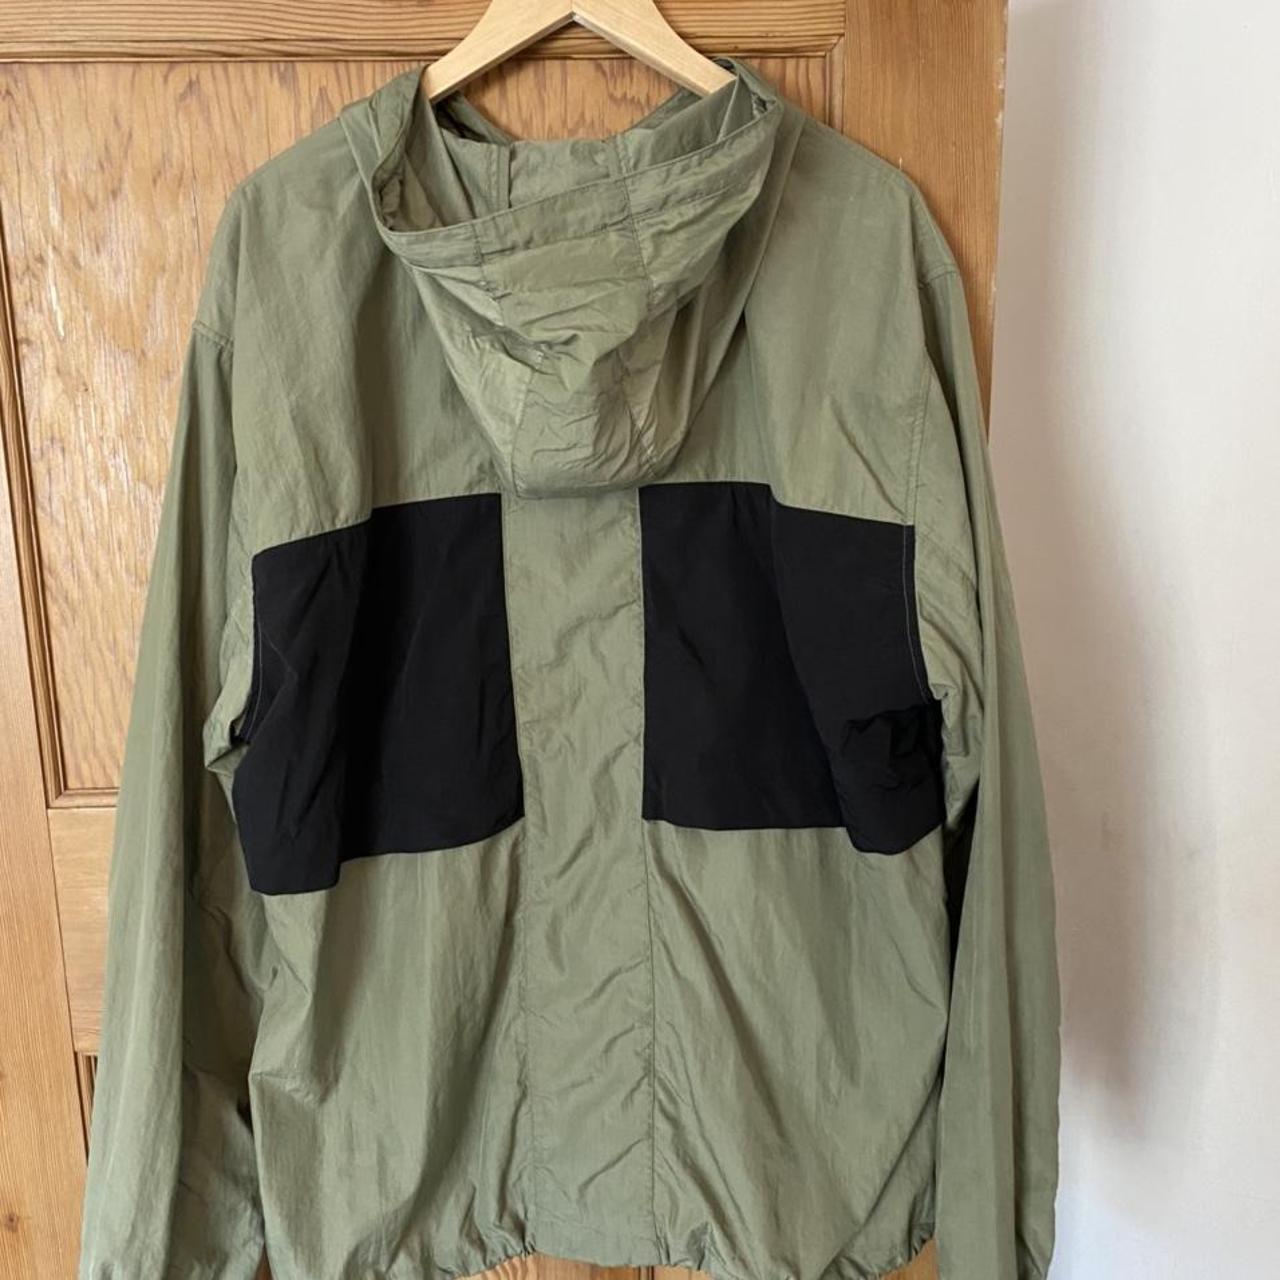 Stüssy windbreaker jacket great for layering in a... - Depop